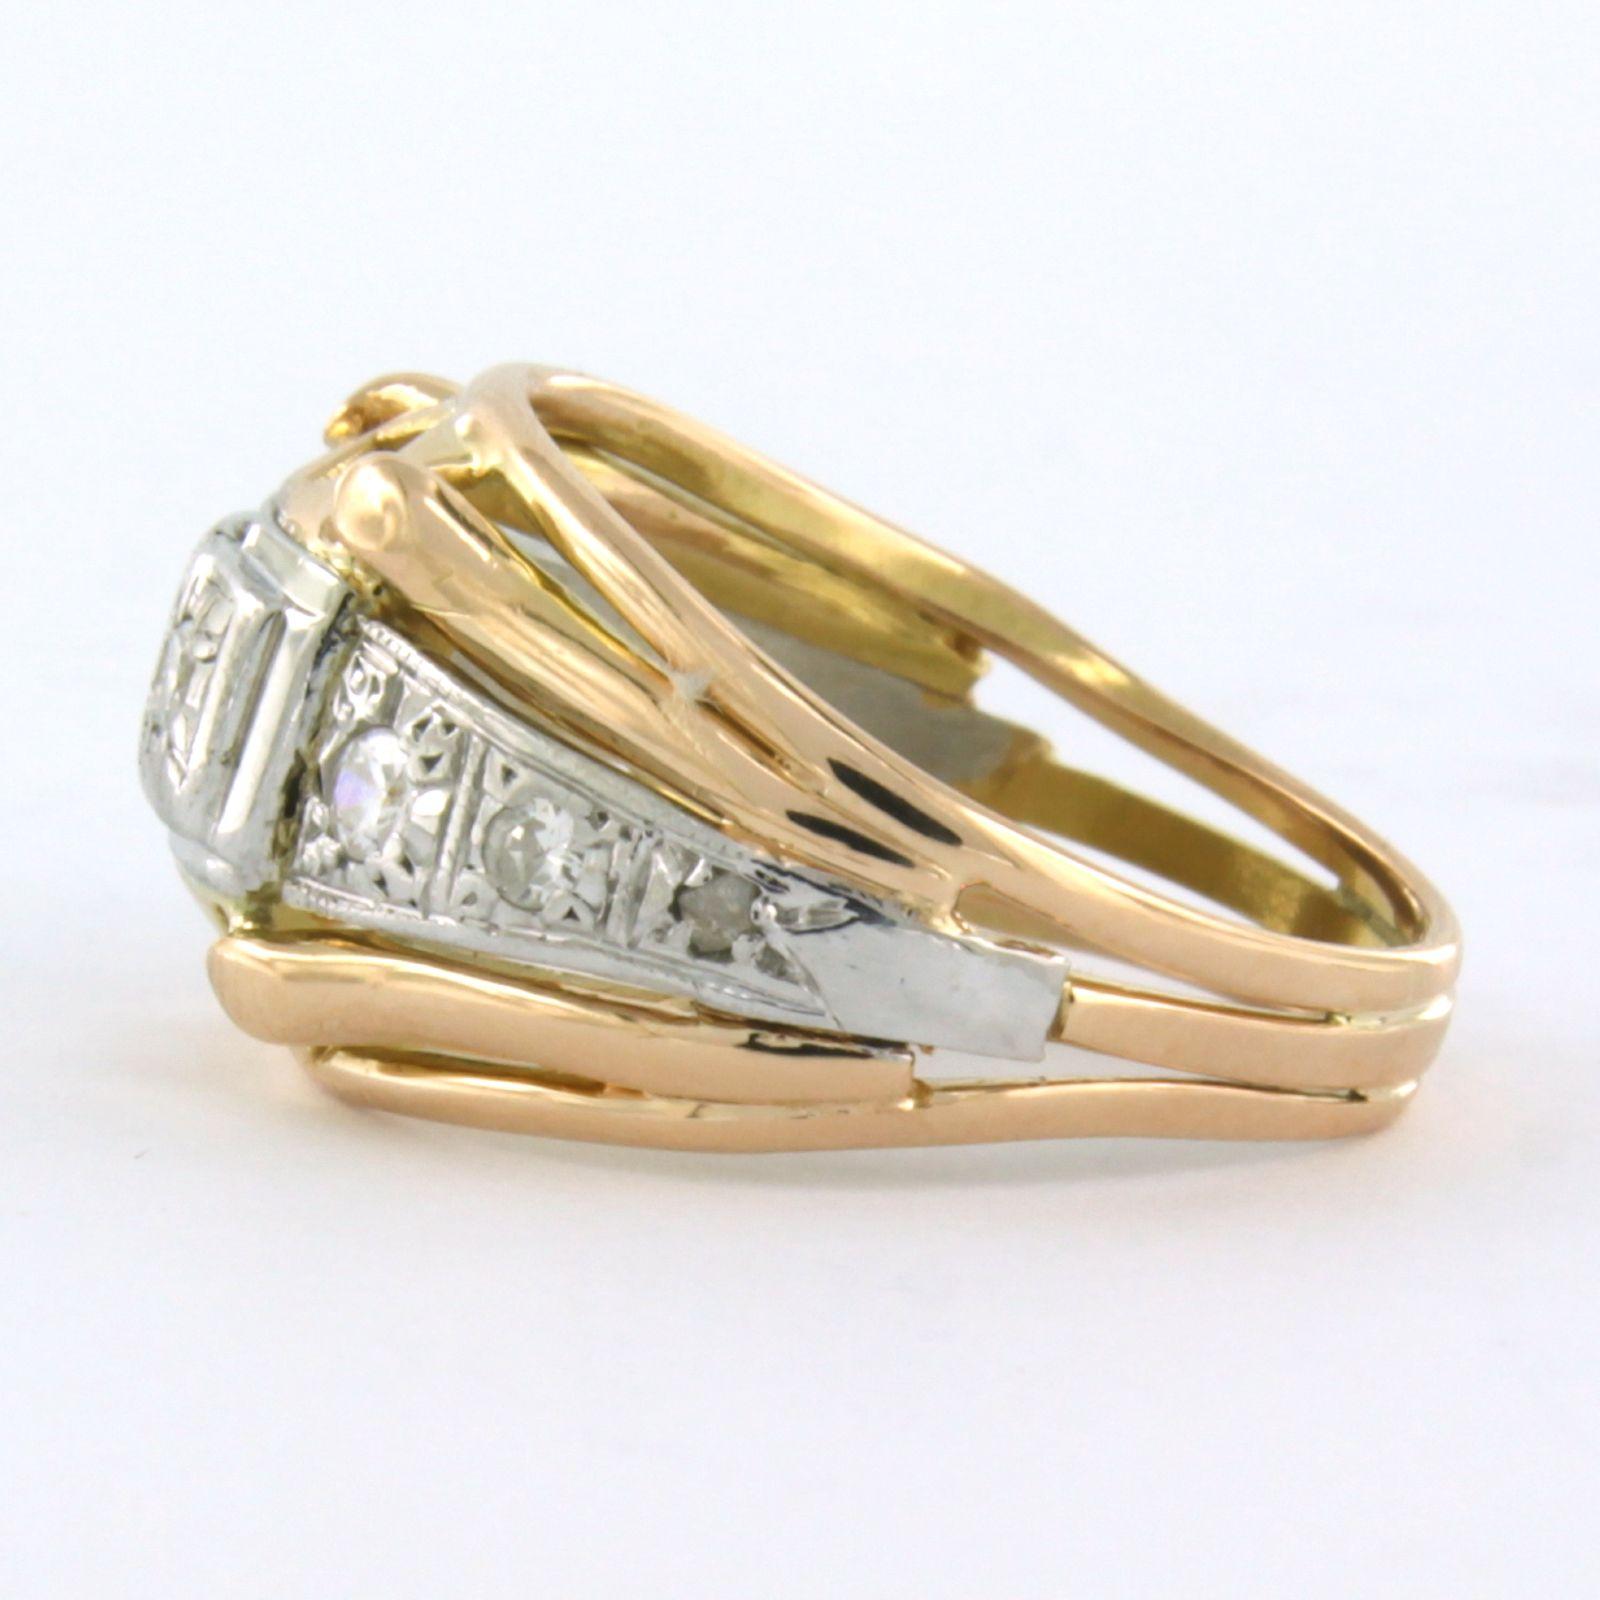 18k Bicolor Goldring mit altem europäischem Schliff Diamant bis zu 0.22ct - F/G - VS/SI - Ringgröße U.S. 6.5 - EU. 17 (53)

detaillierte Beschreibung:

die Oberseite des Rings ist 1,2 cm breit und 5,0 mm hoch

Gewicht 5,9 Gramm

Ringgröße US 6.5 -